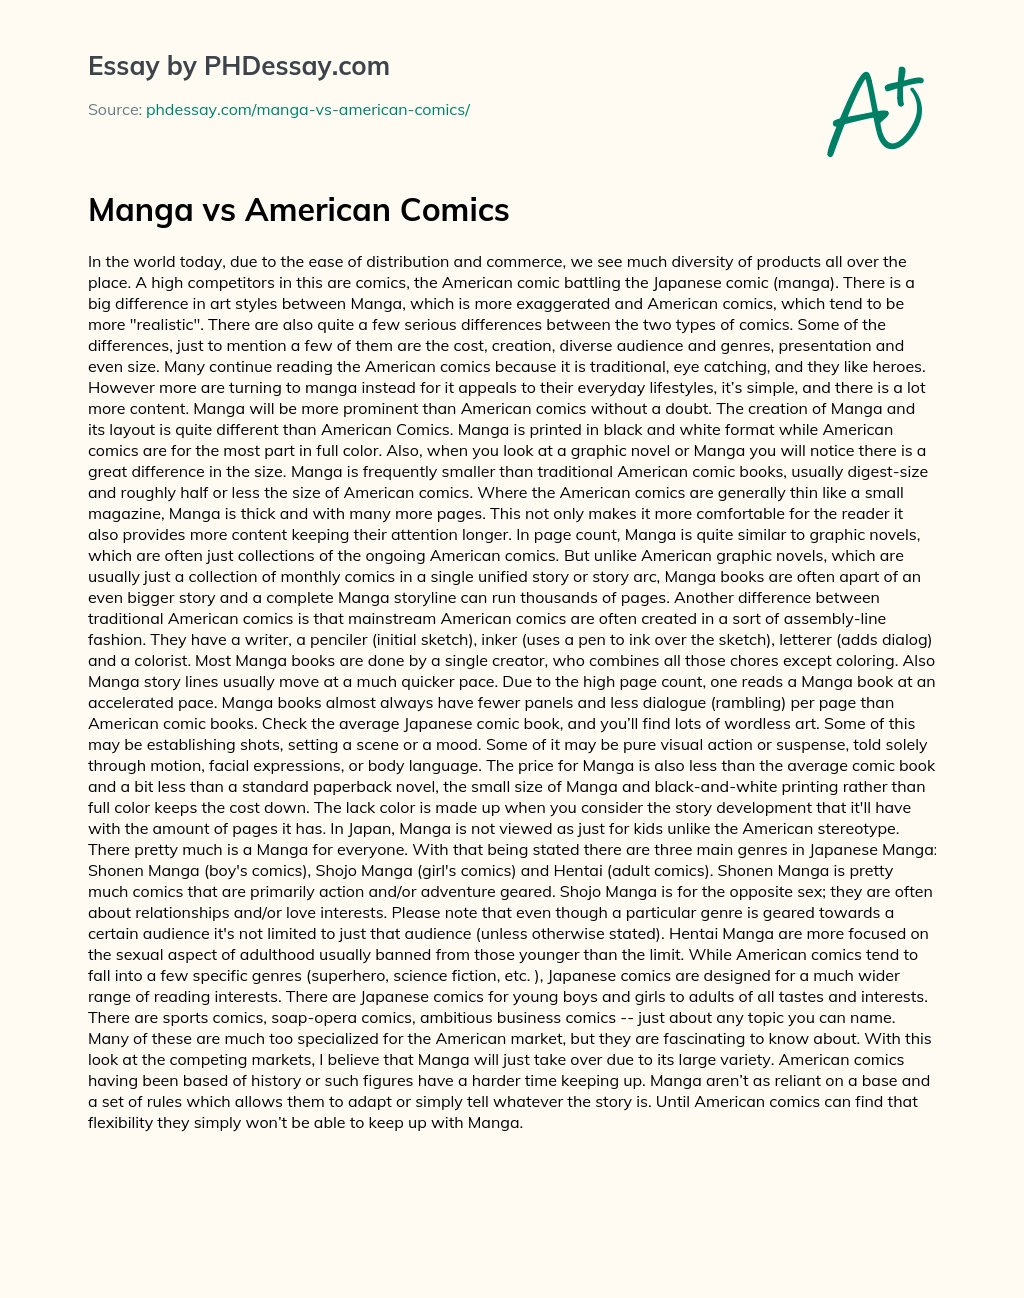 Manga vs American Comics essay